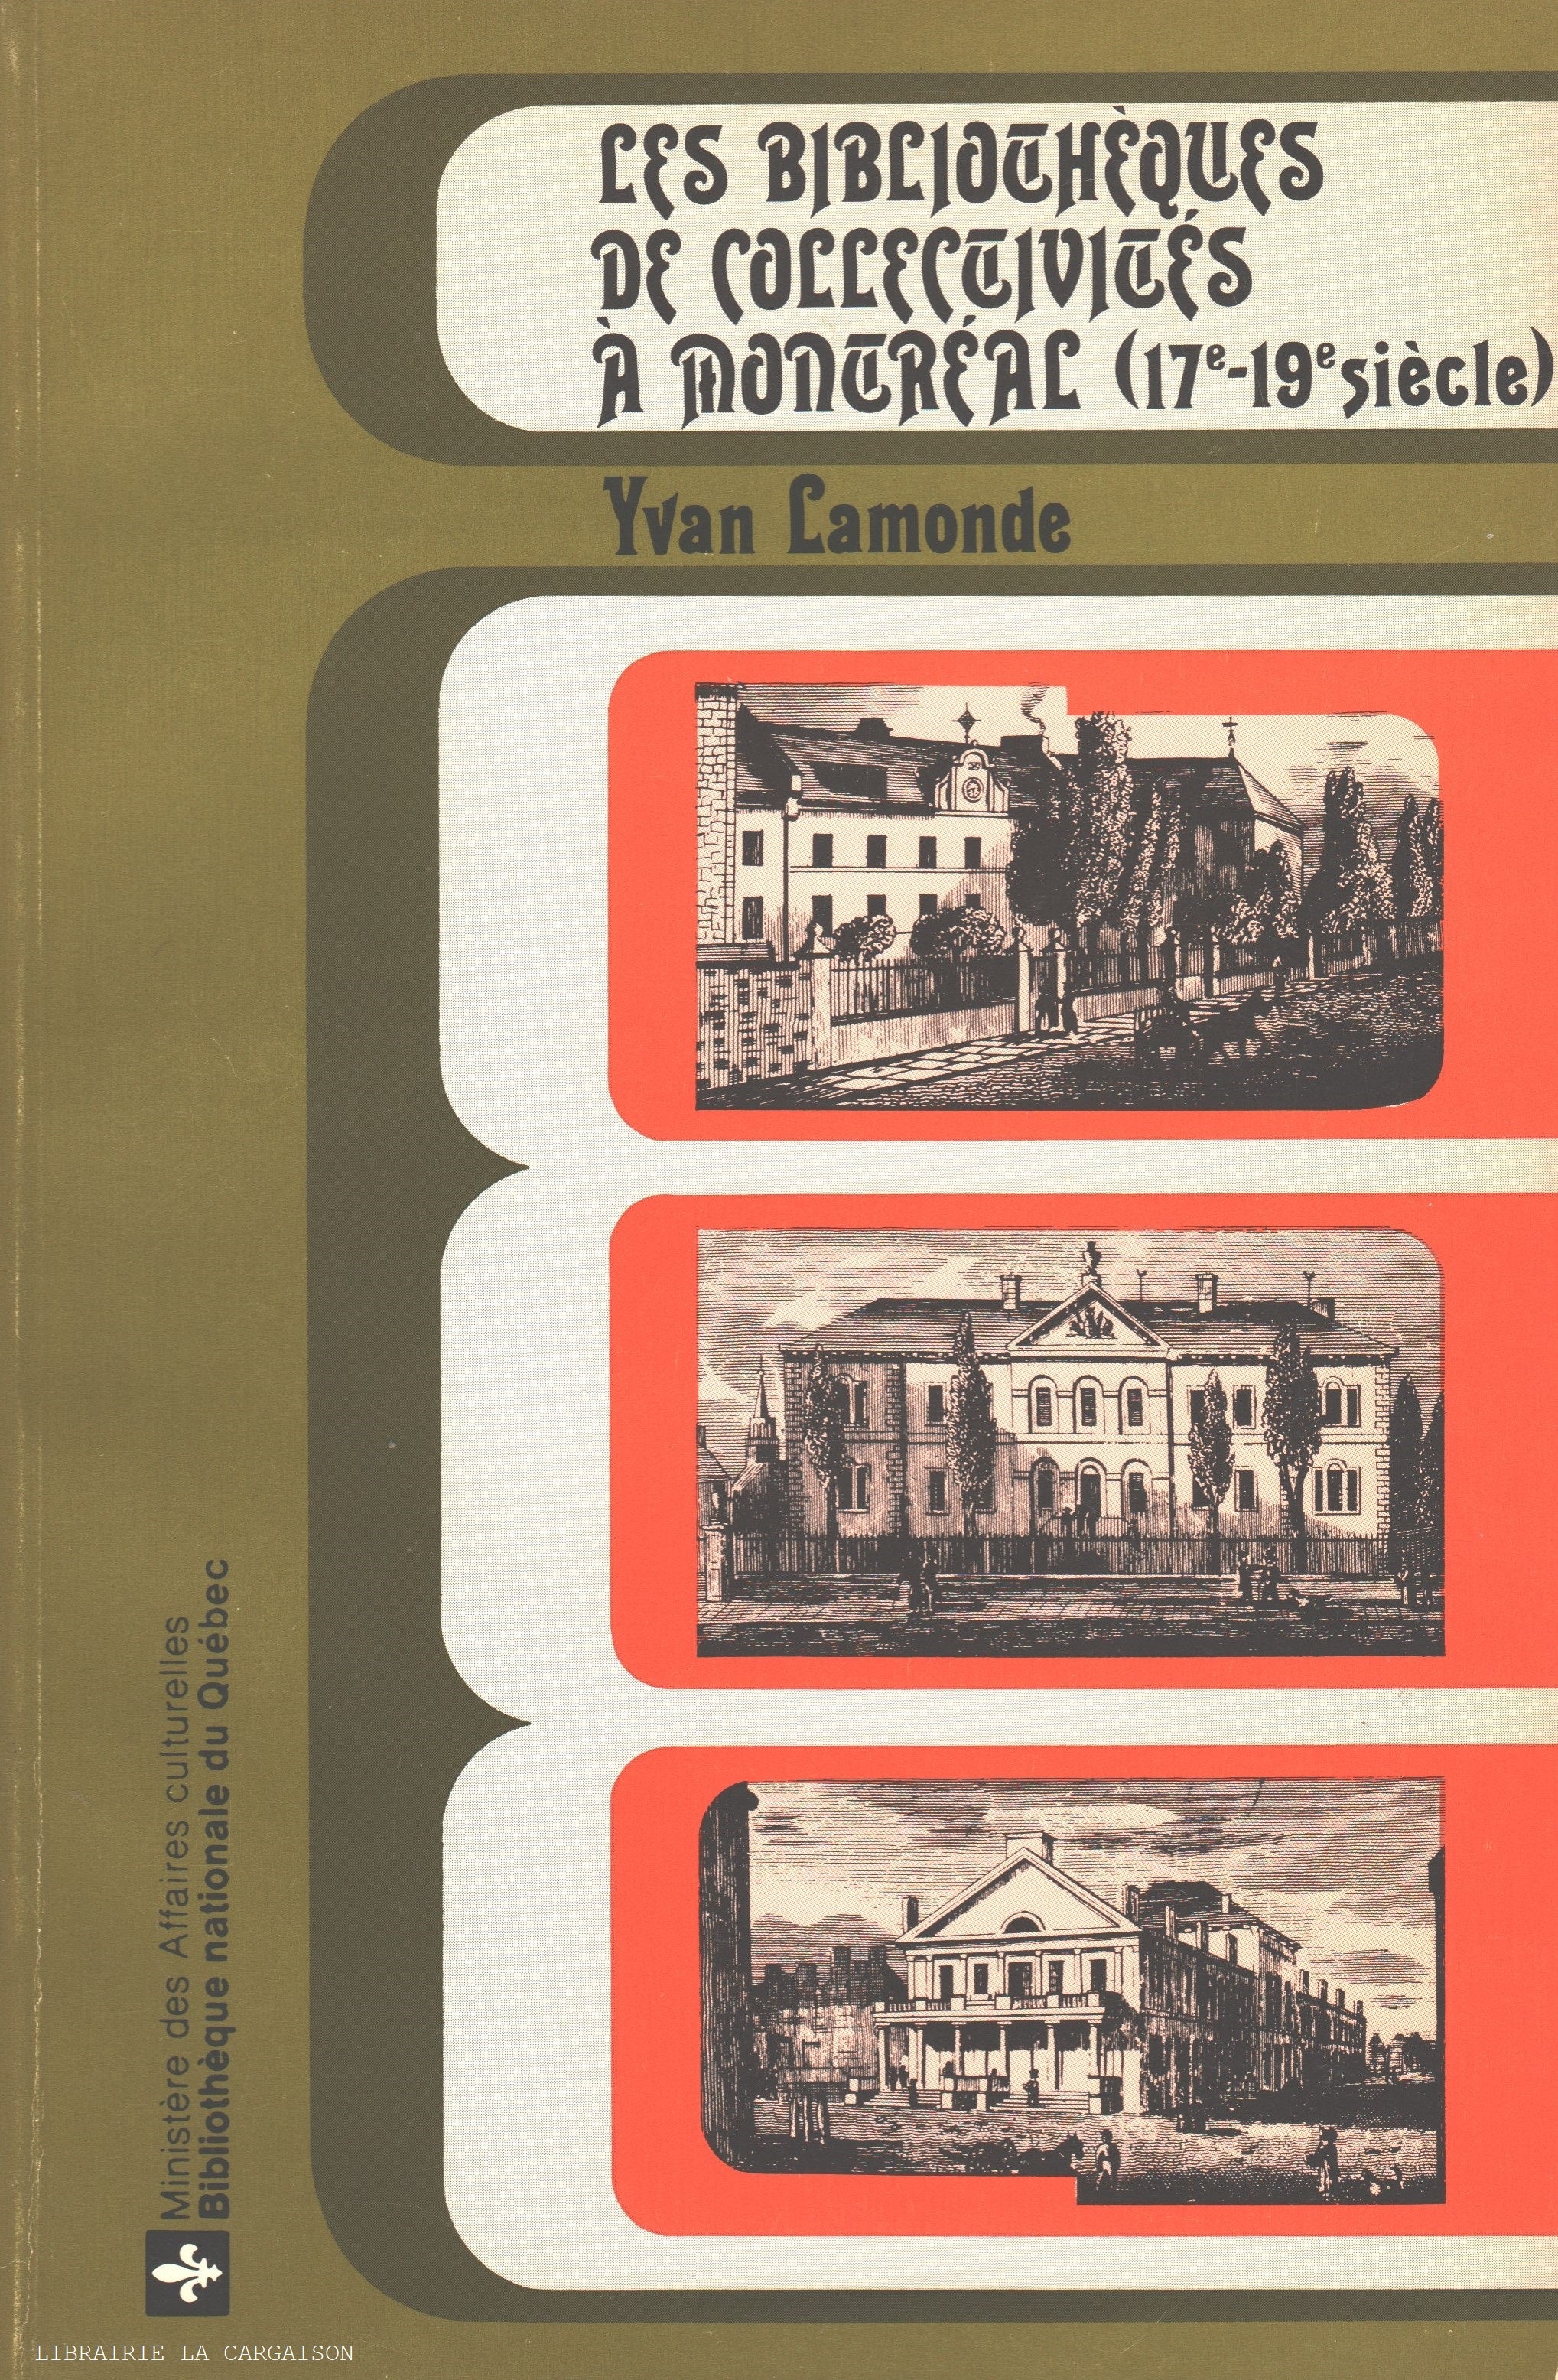 LAMONDE, YVAN. Bibliothèques de collectivités à Montréal (17e-19e siècle) (Les) - Sources et problèmes